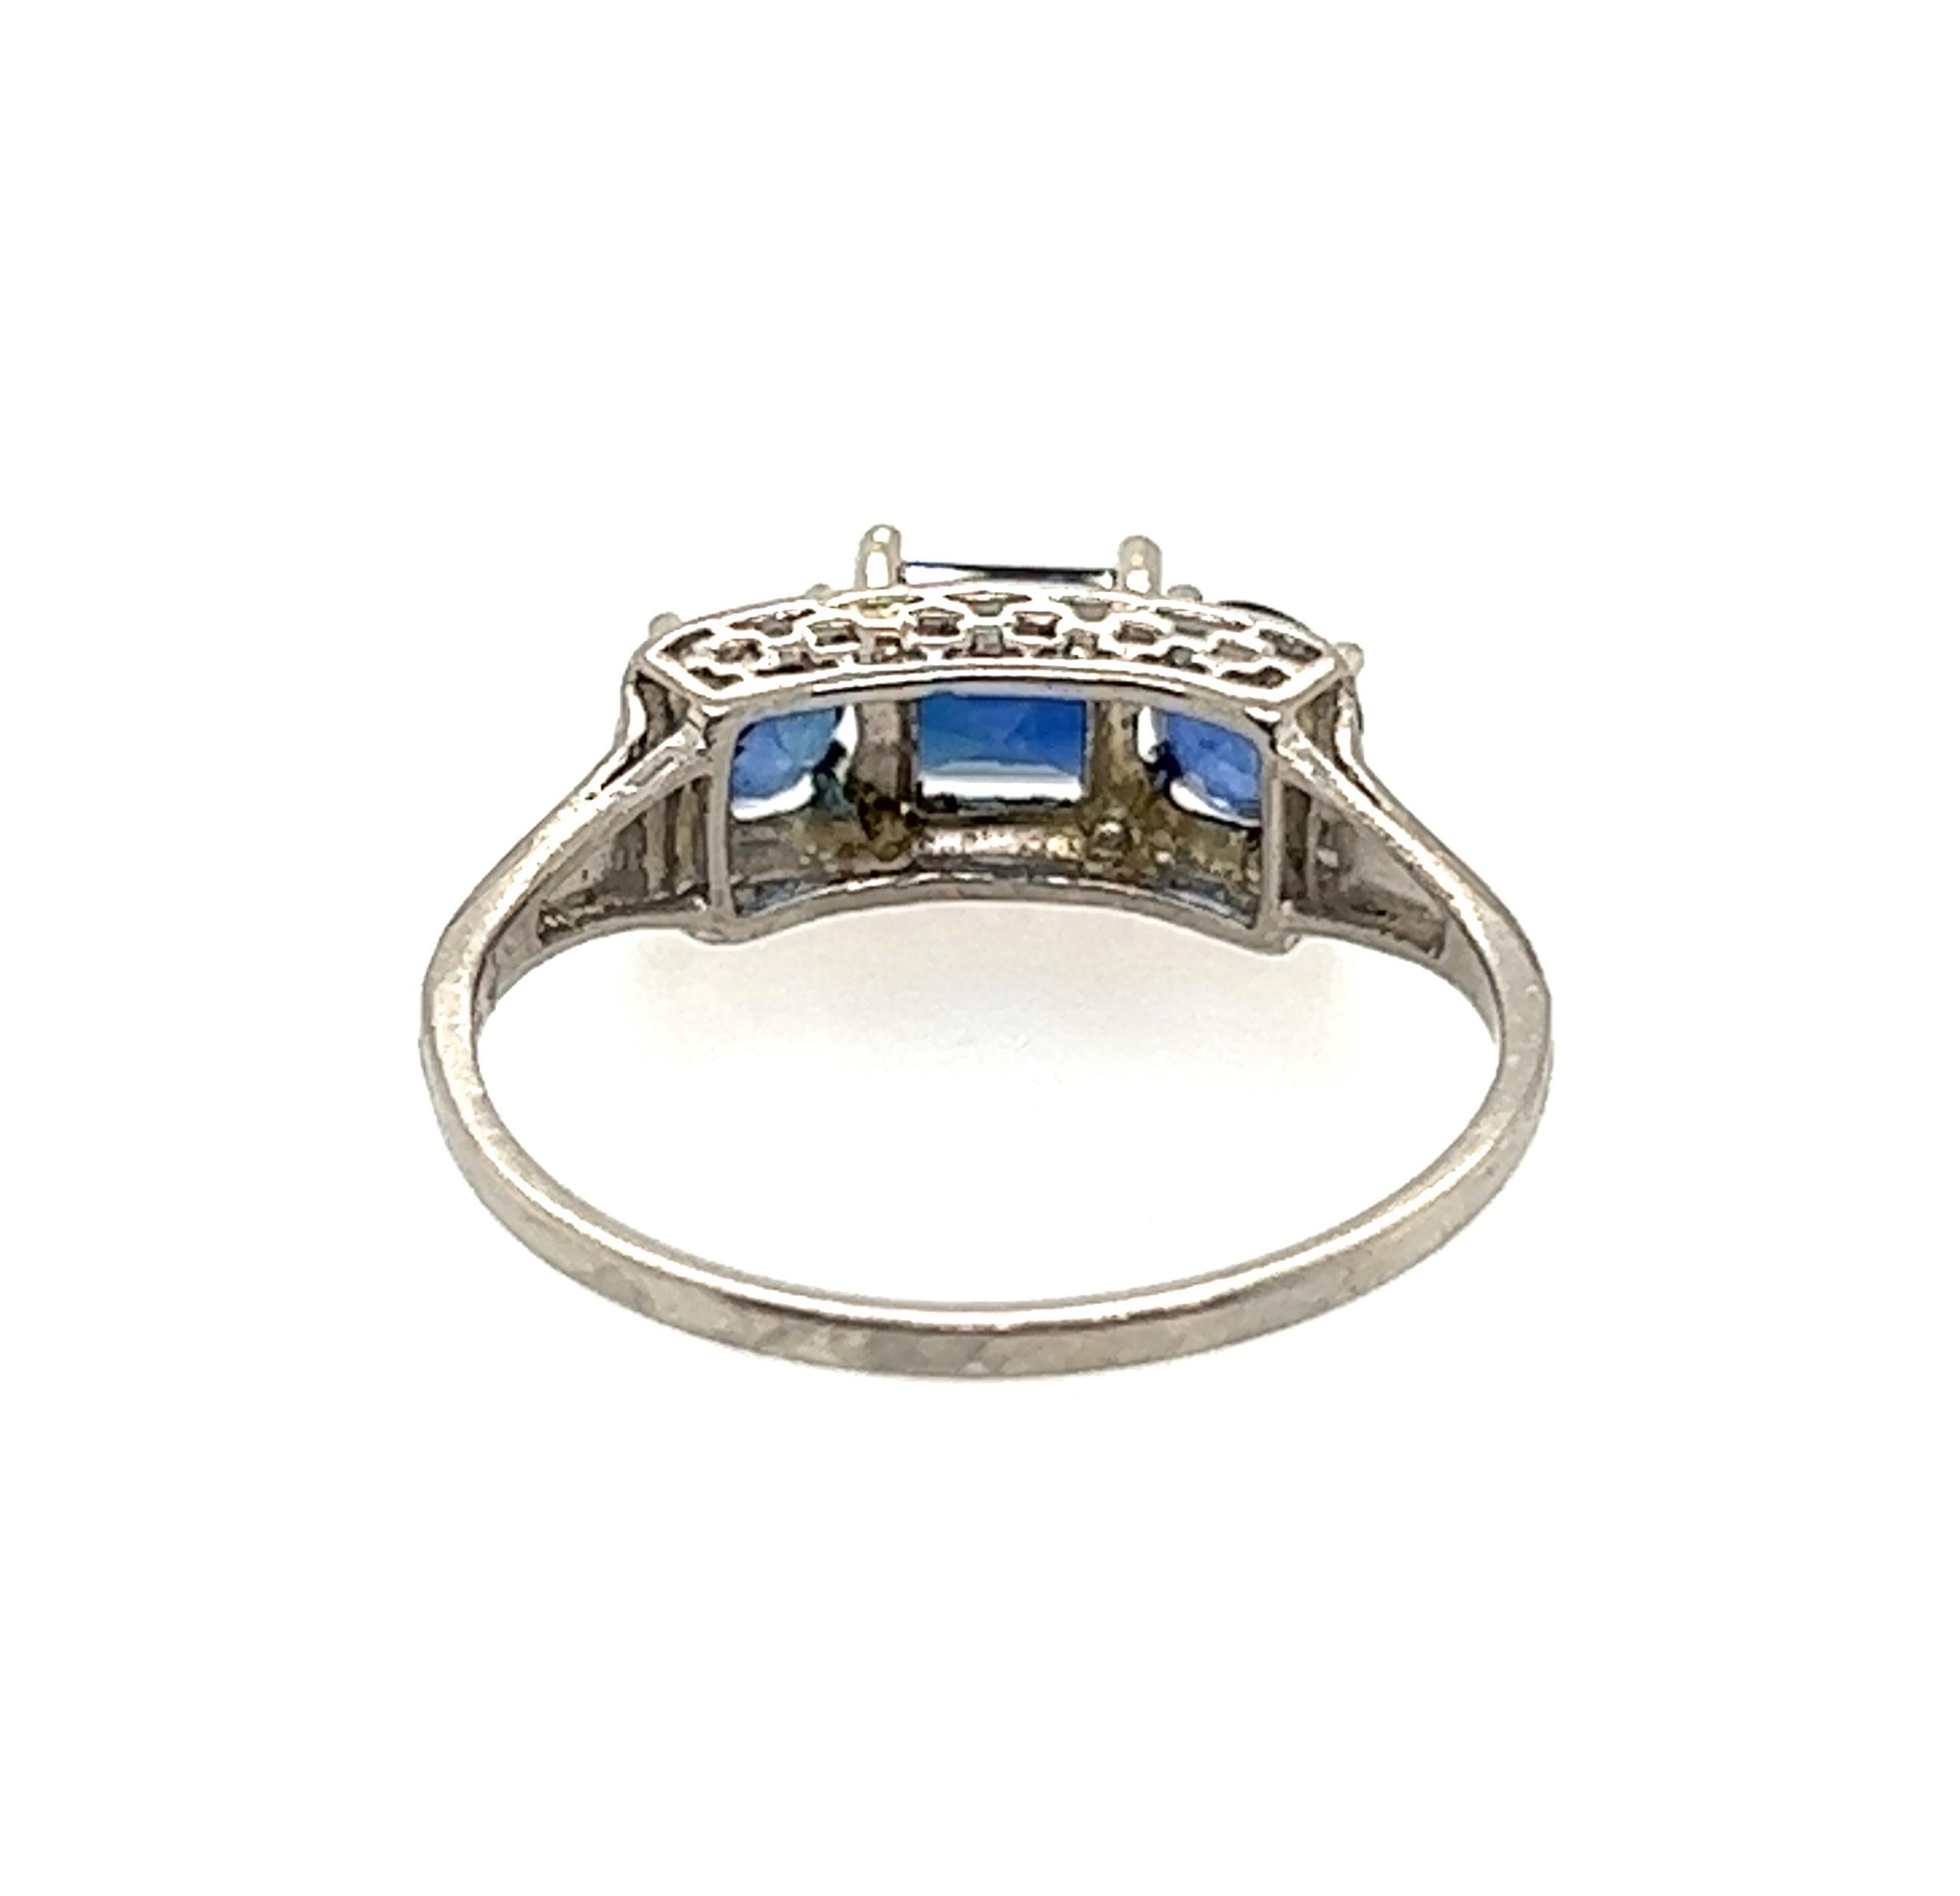 Edwardian 3 Stone Sapphire Ring 2.10ct Asscher/Round Cut Original 1900's Plat 1